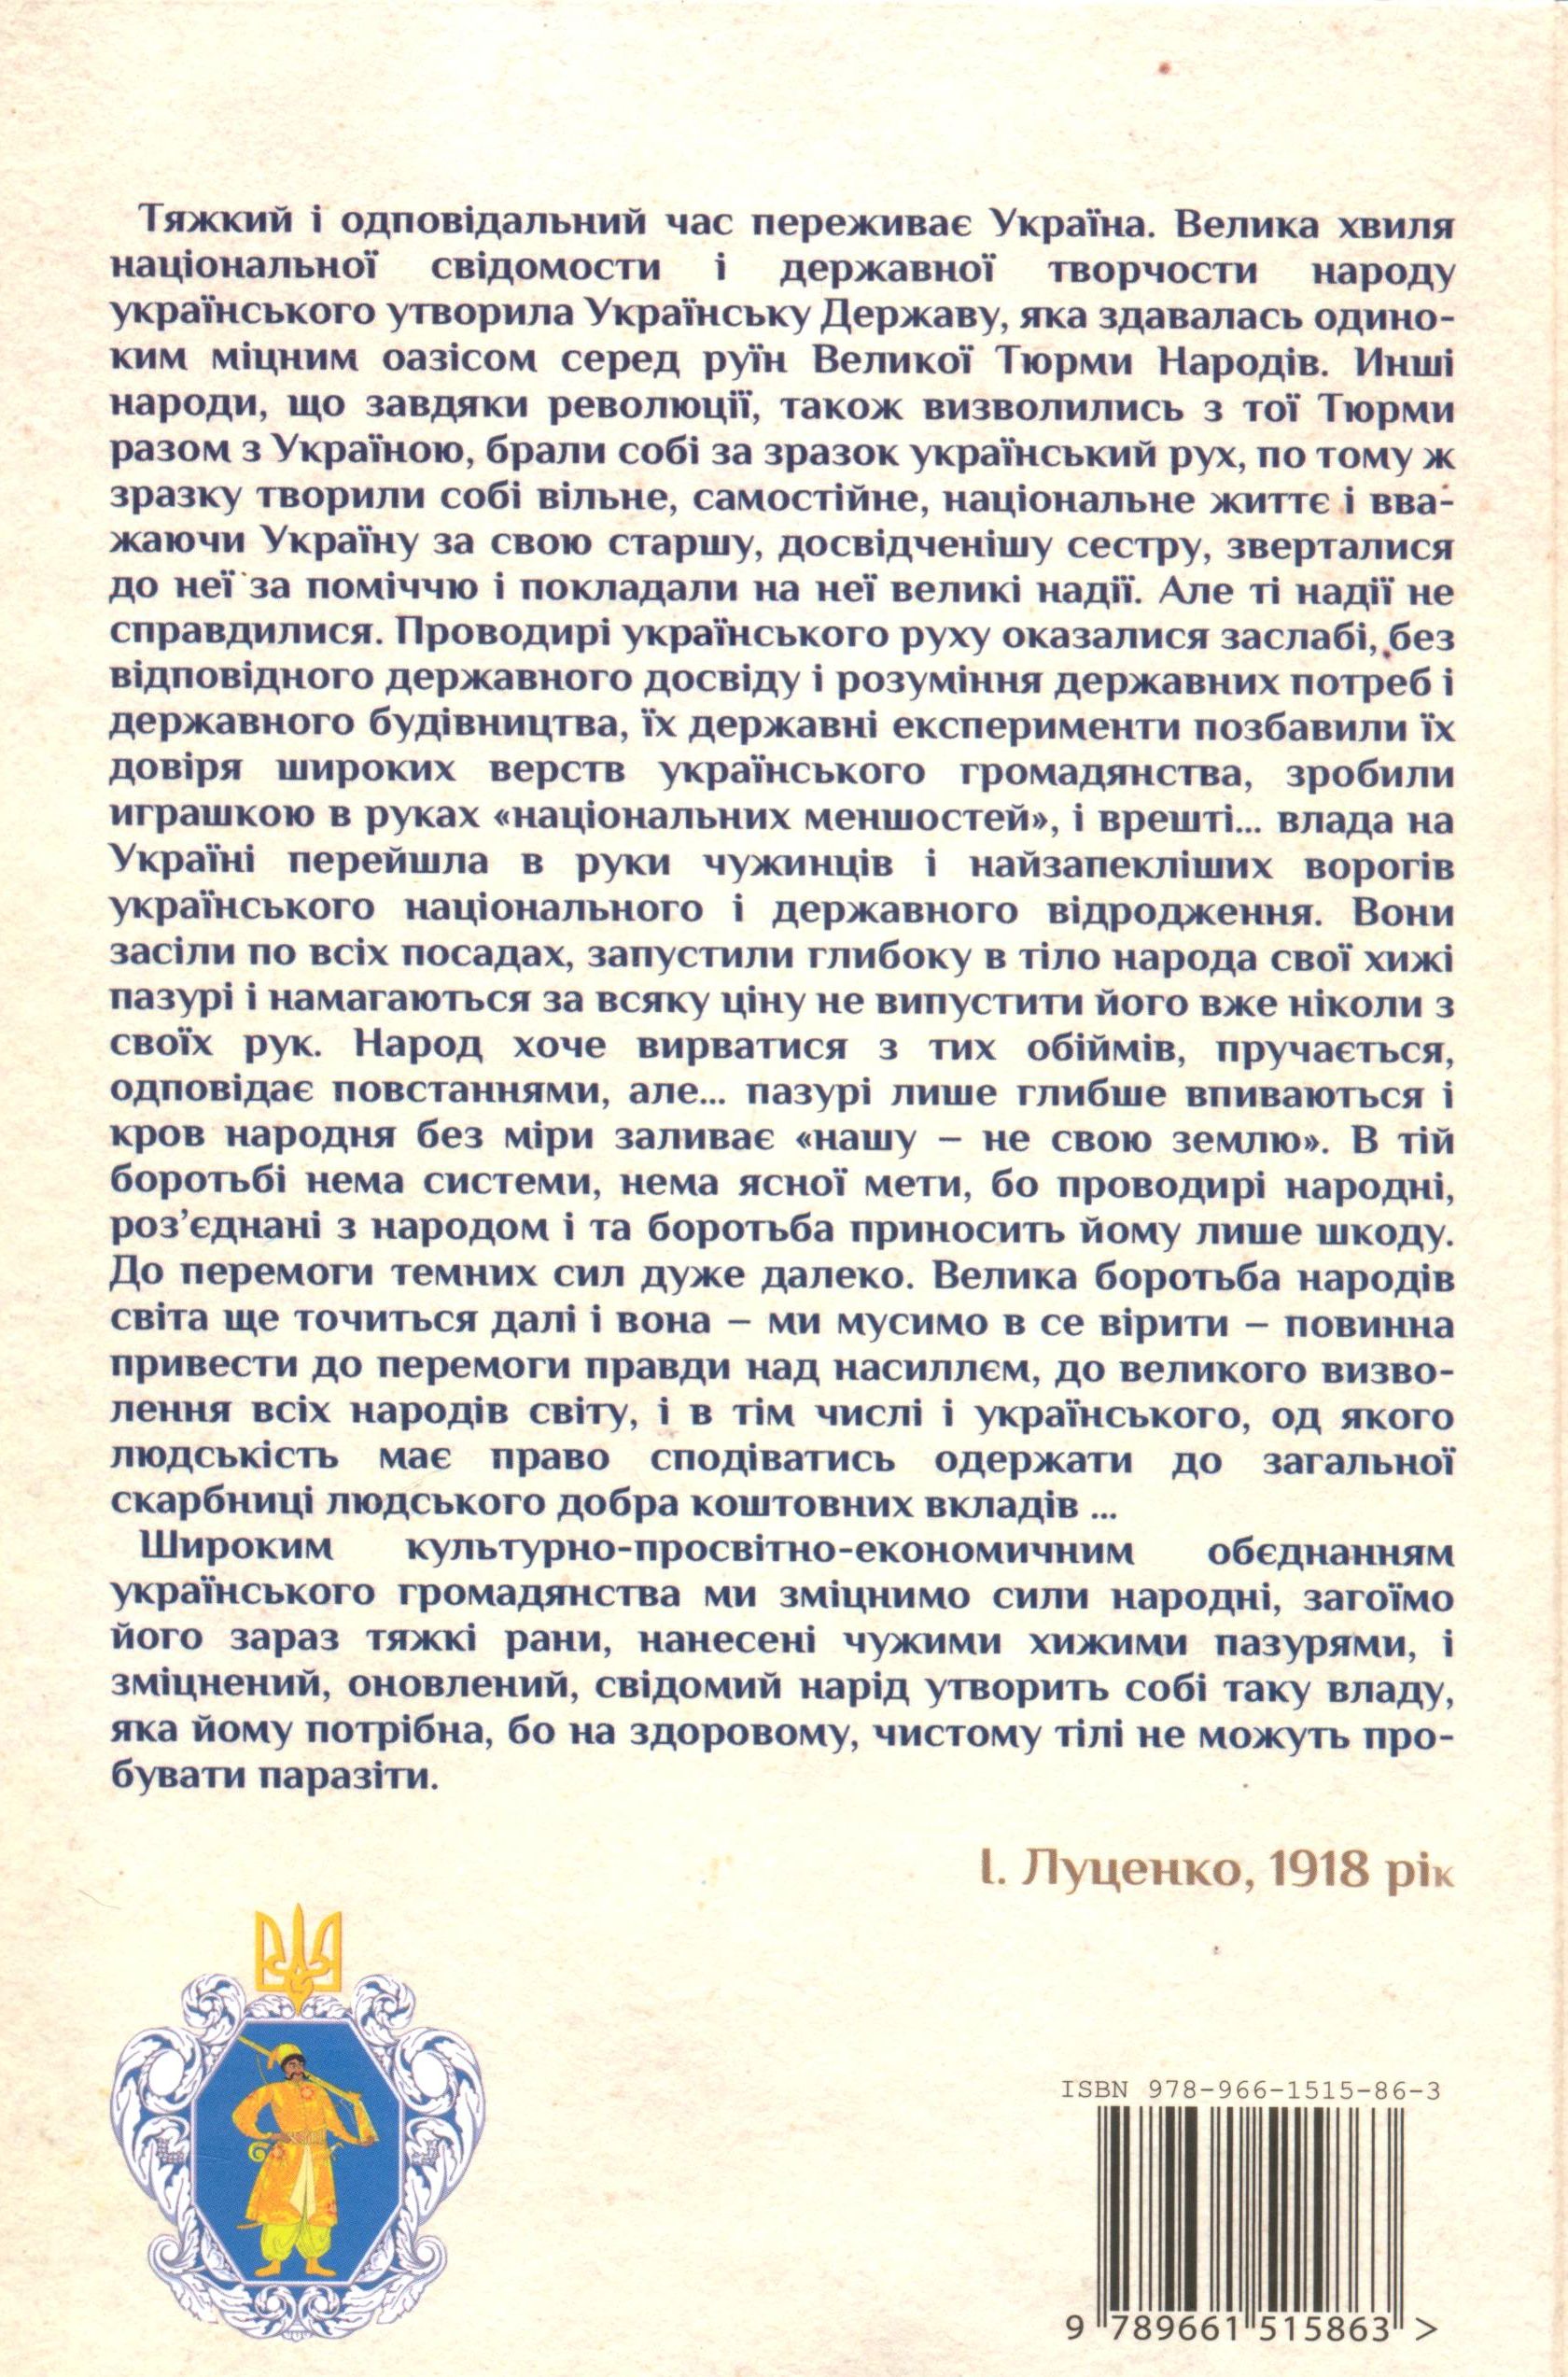 Іван Луценко(1863-1919): Український націєтворець